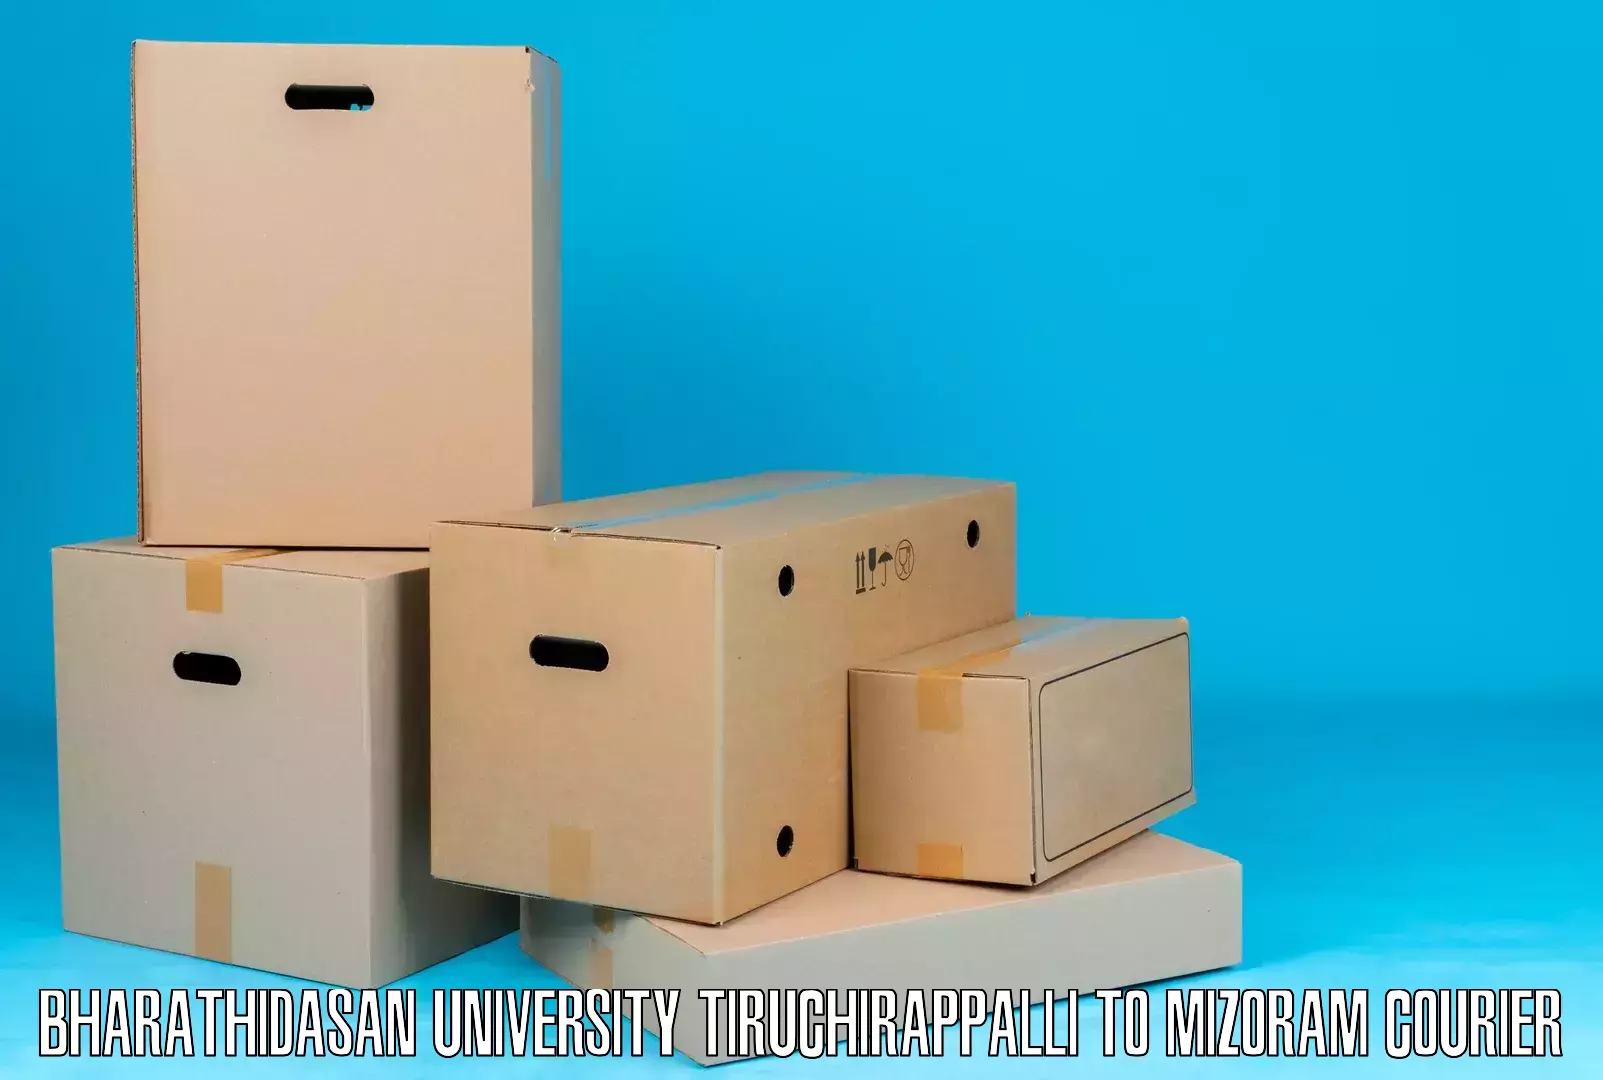 Large-scale shipping solutions Bharathidasan University Tiruchirappalli to Aizawl